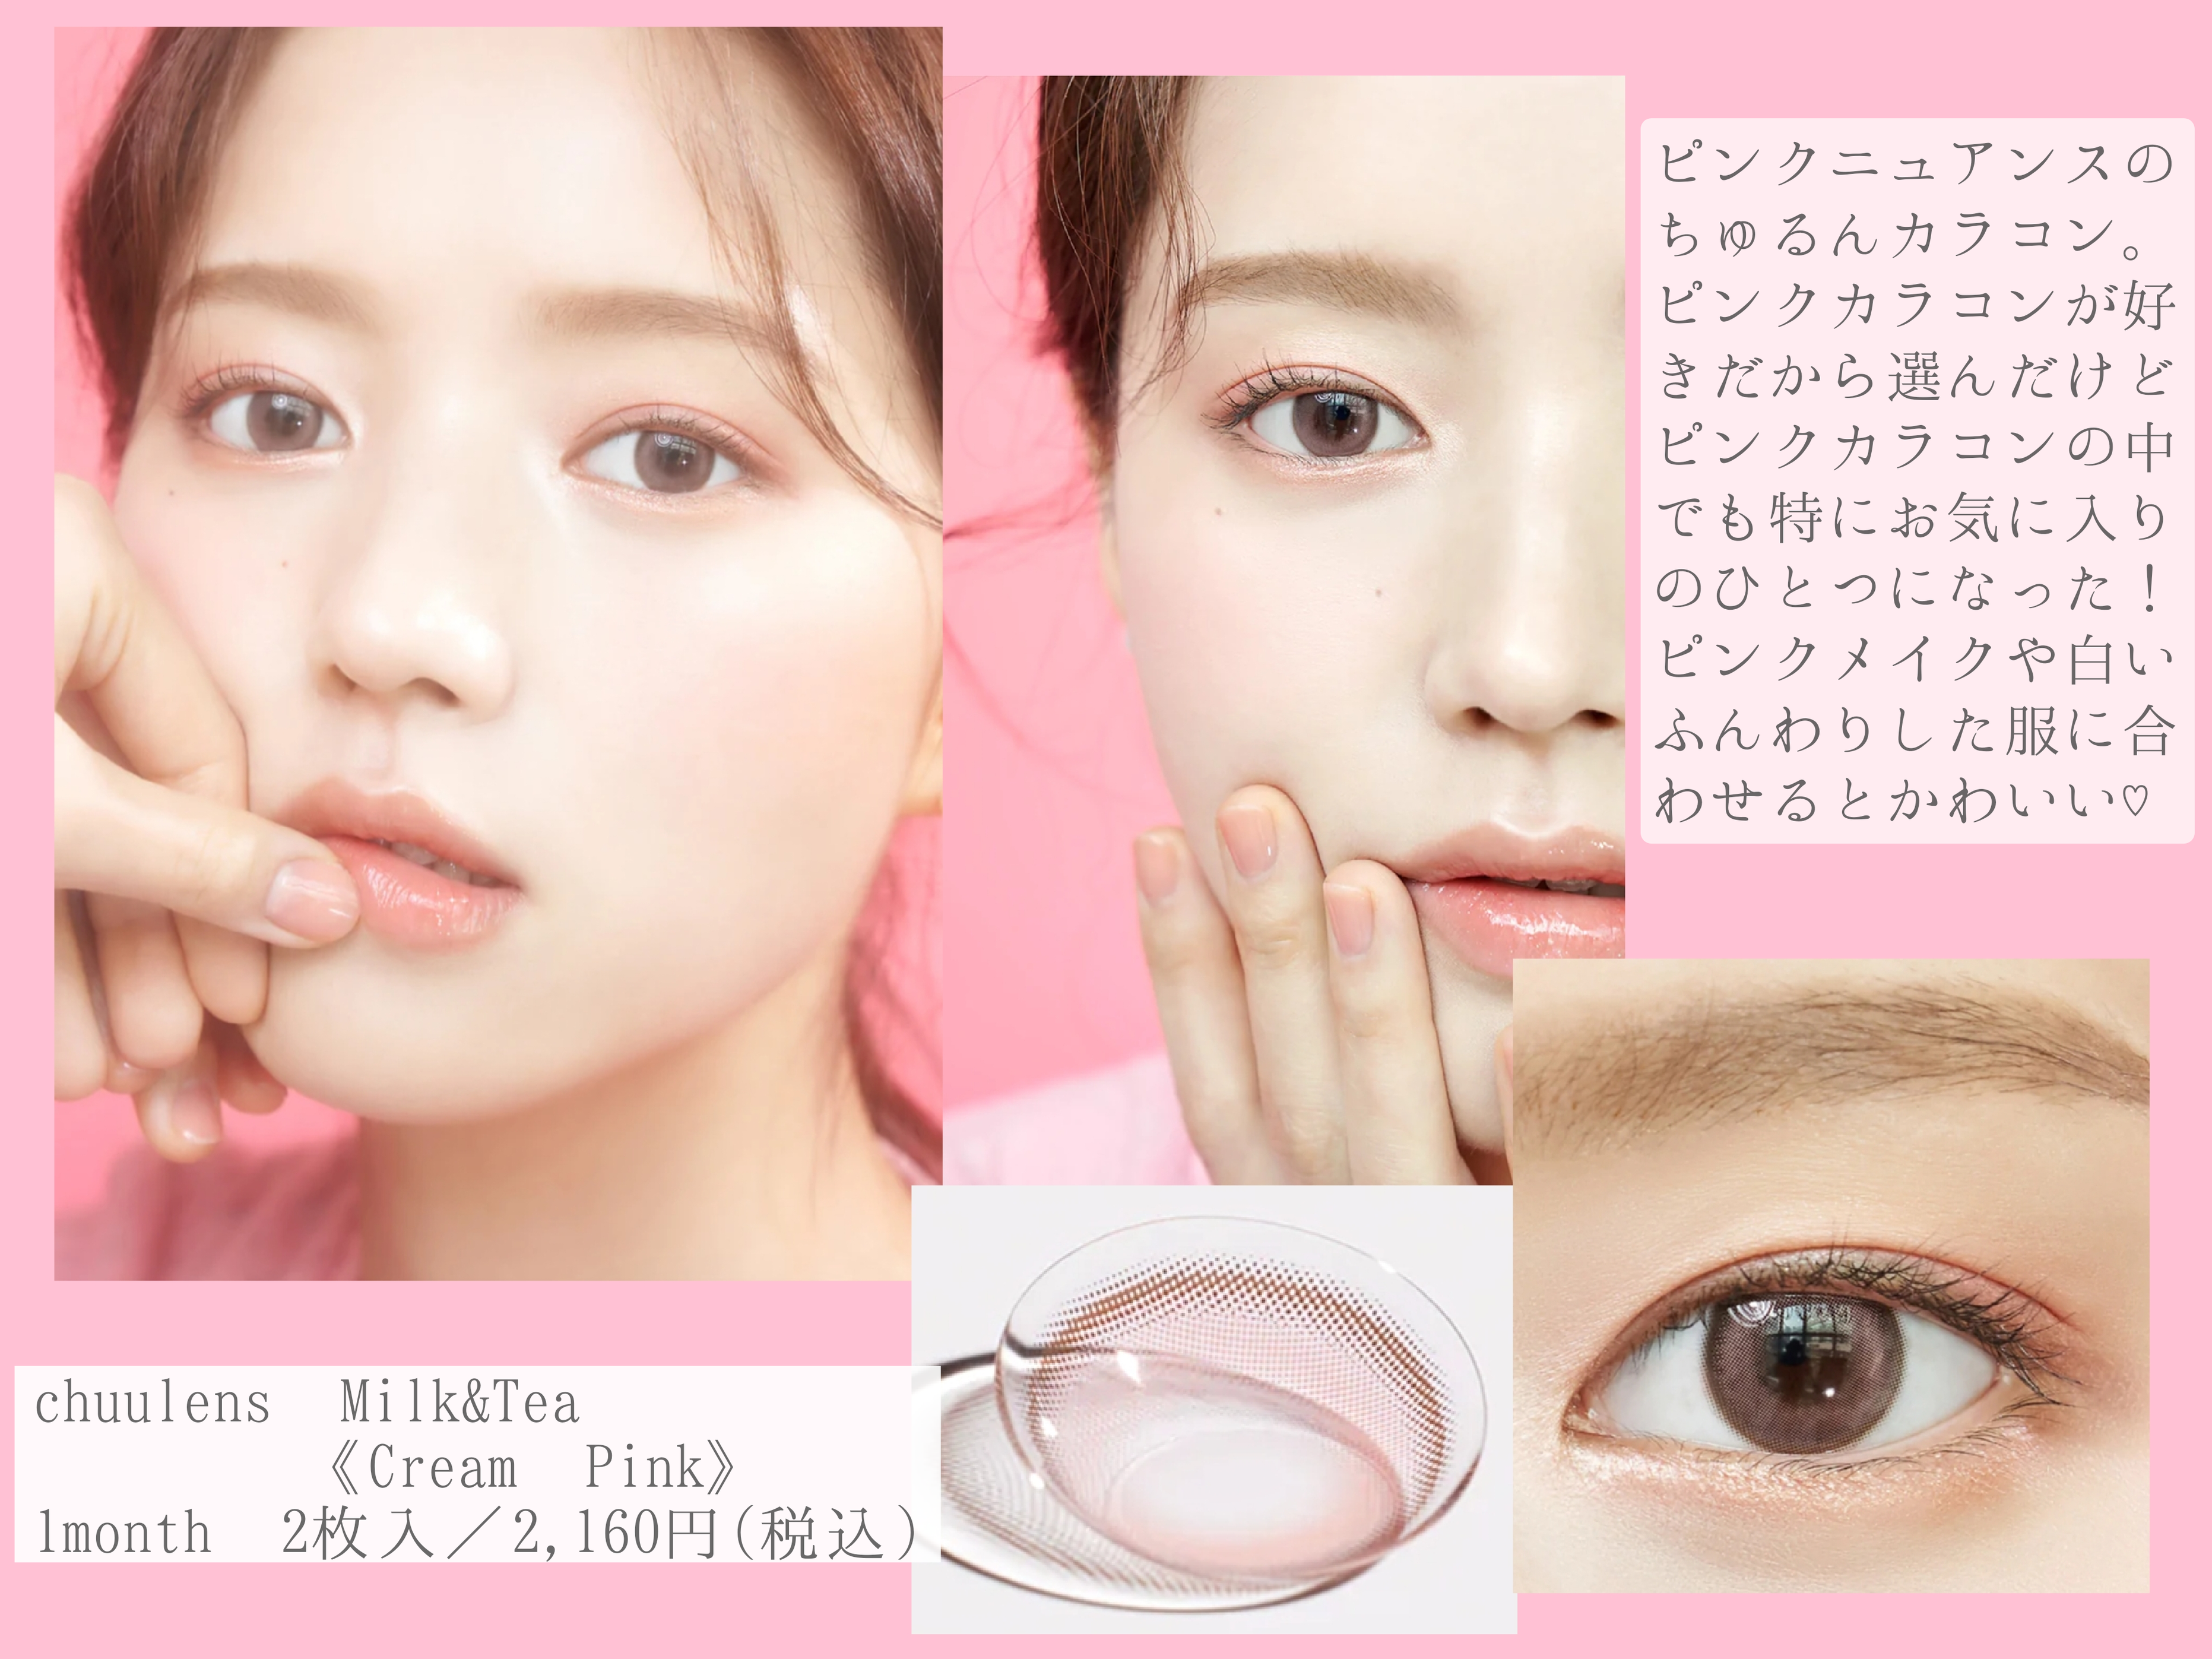 Chuu lens
Milk&Tea
Cream pinkを使った優亜さんのクチコミ画像3